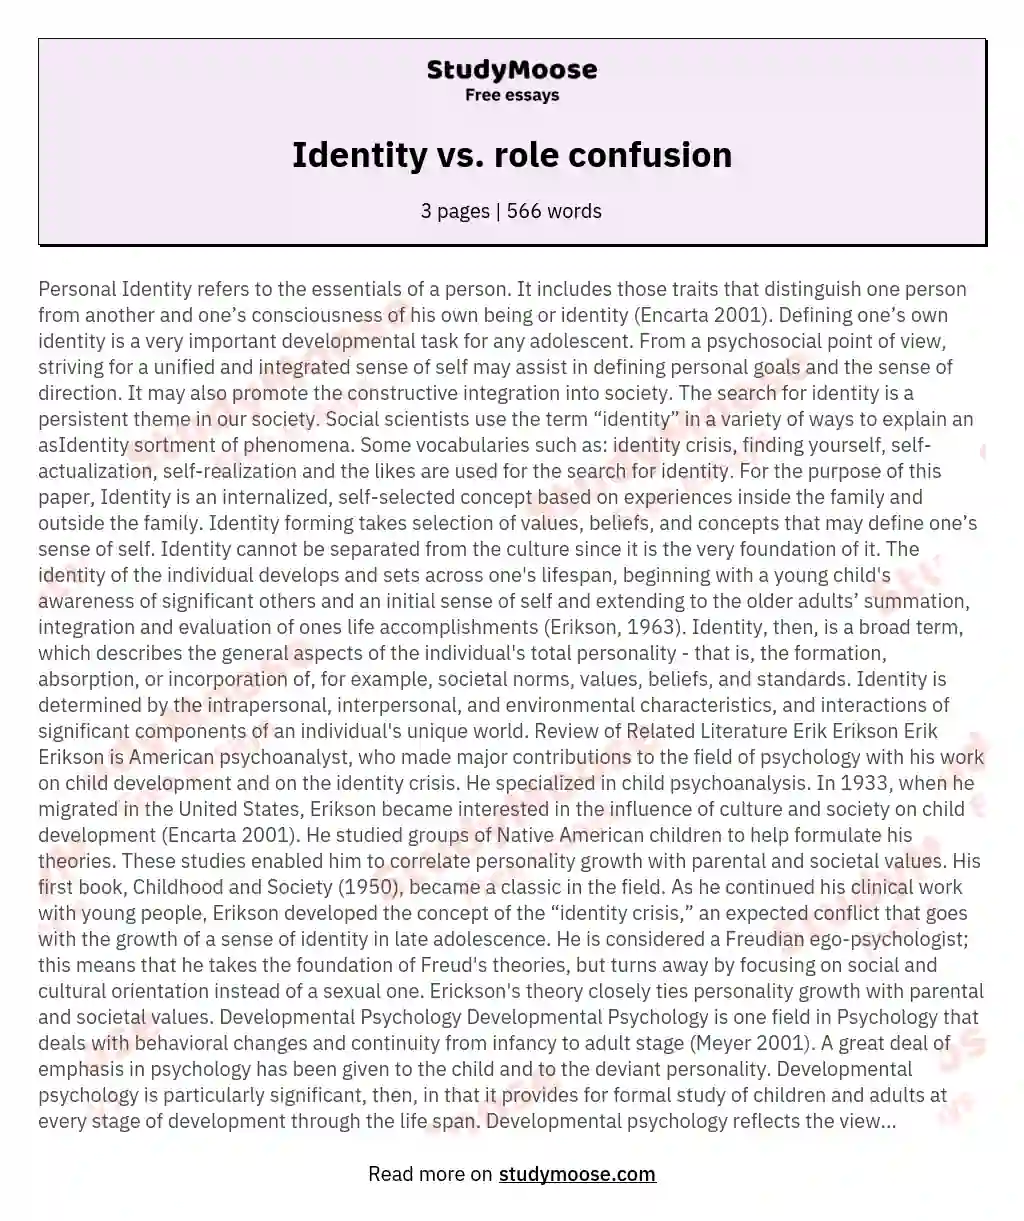 Identity vs. role confusion essay